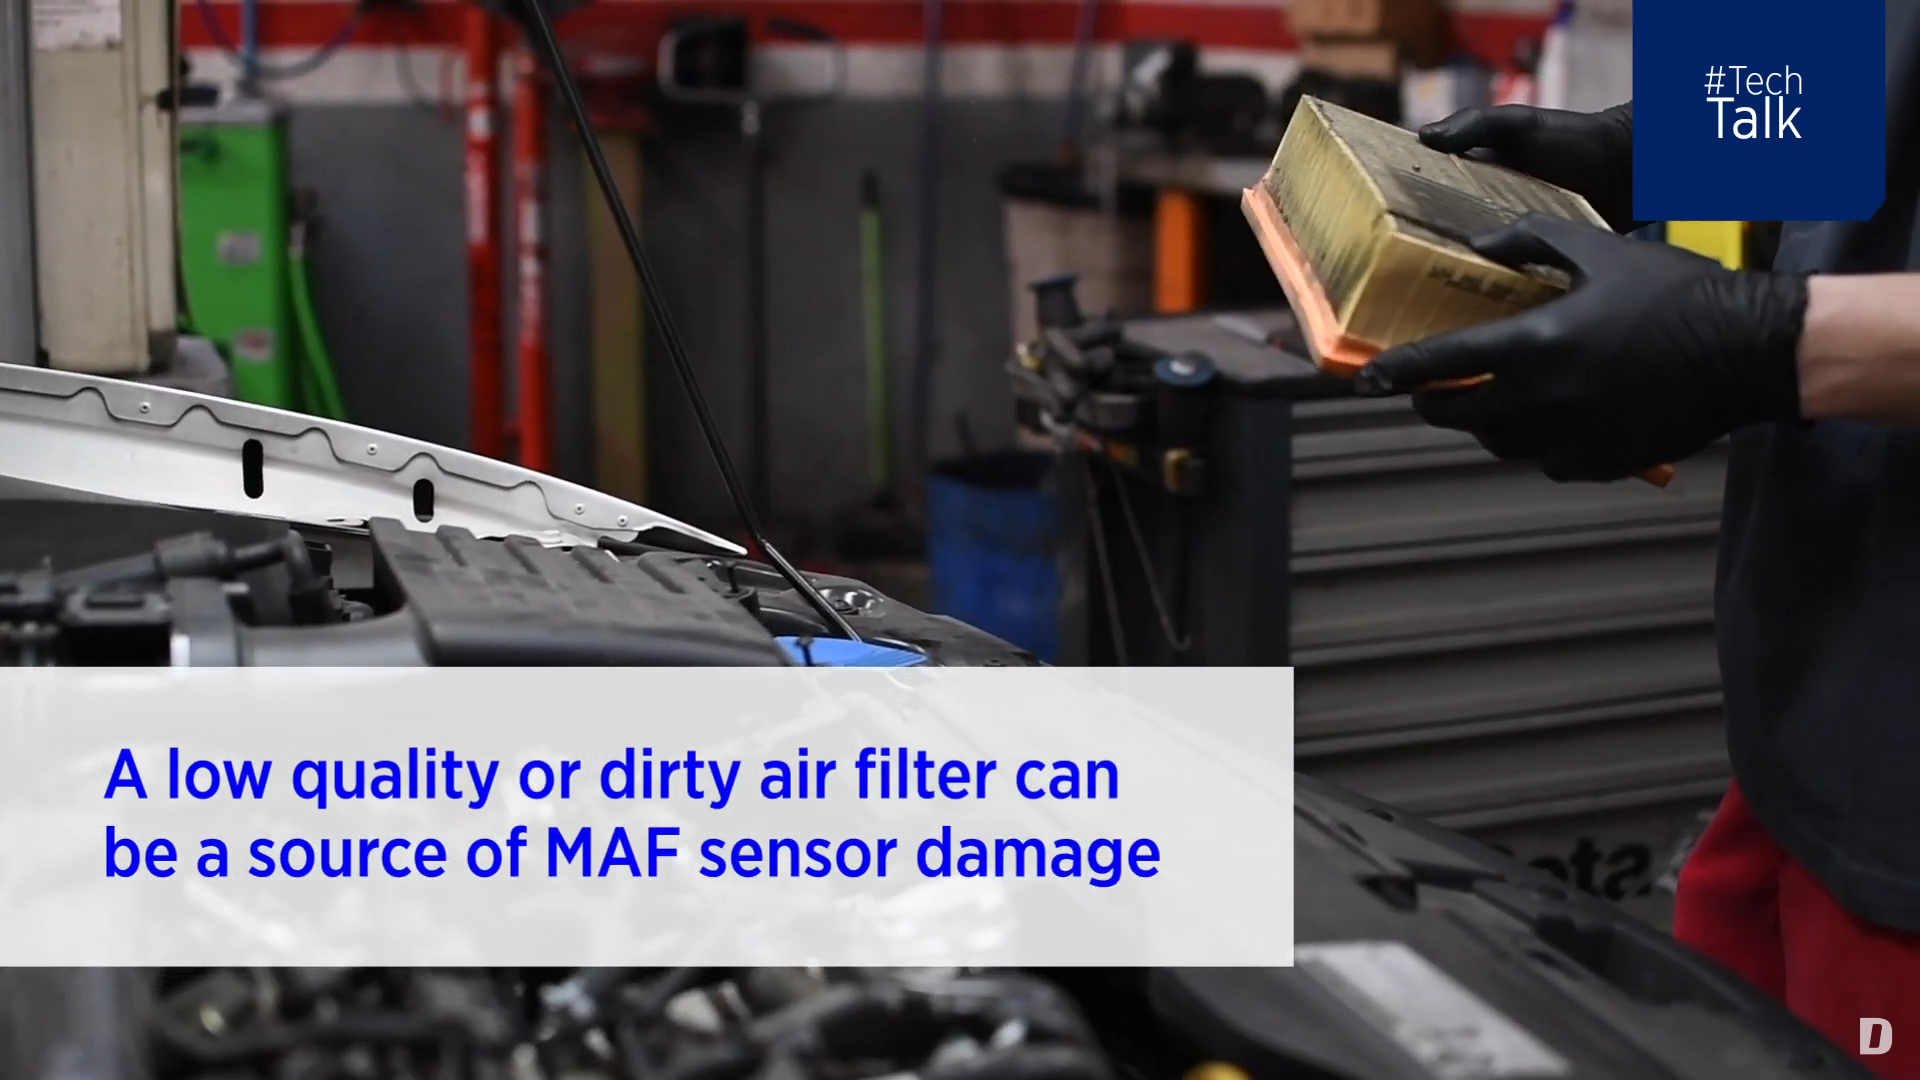 Protezione dei sensori MAF | #MasterclassDT